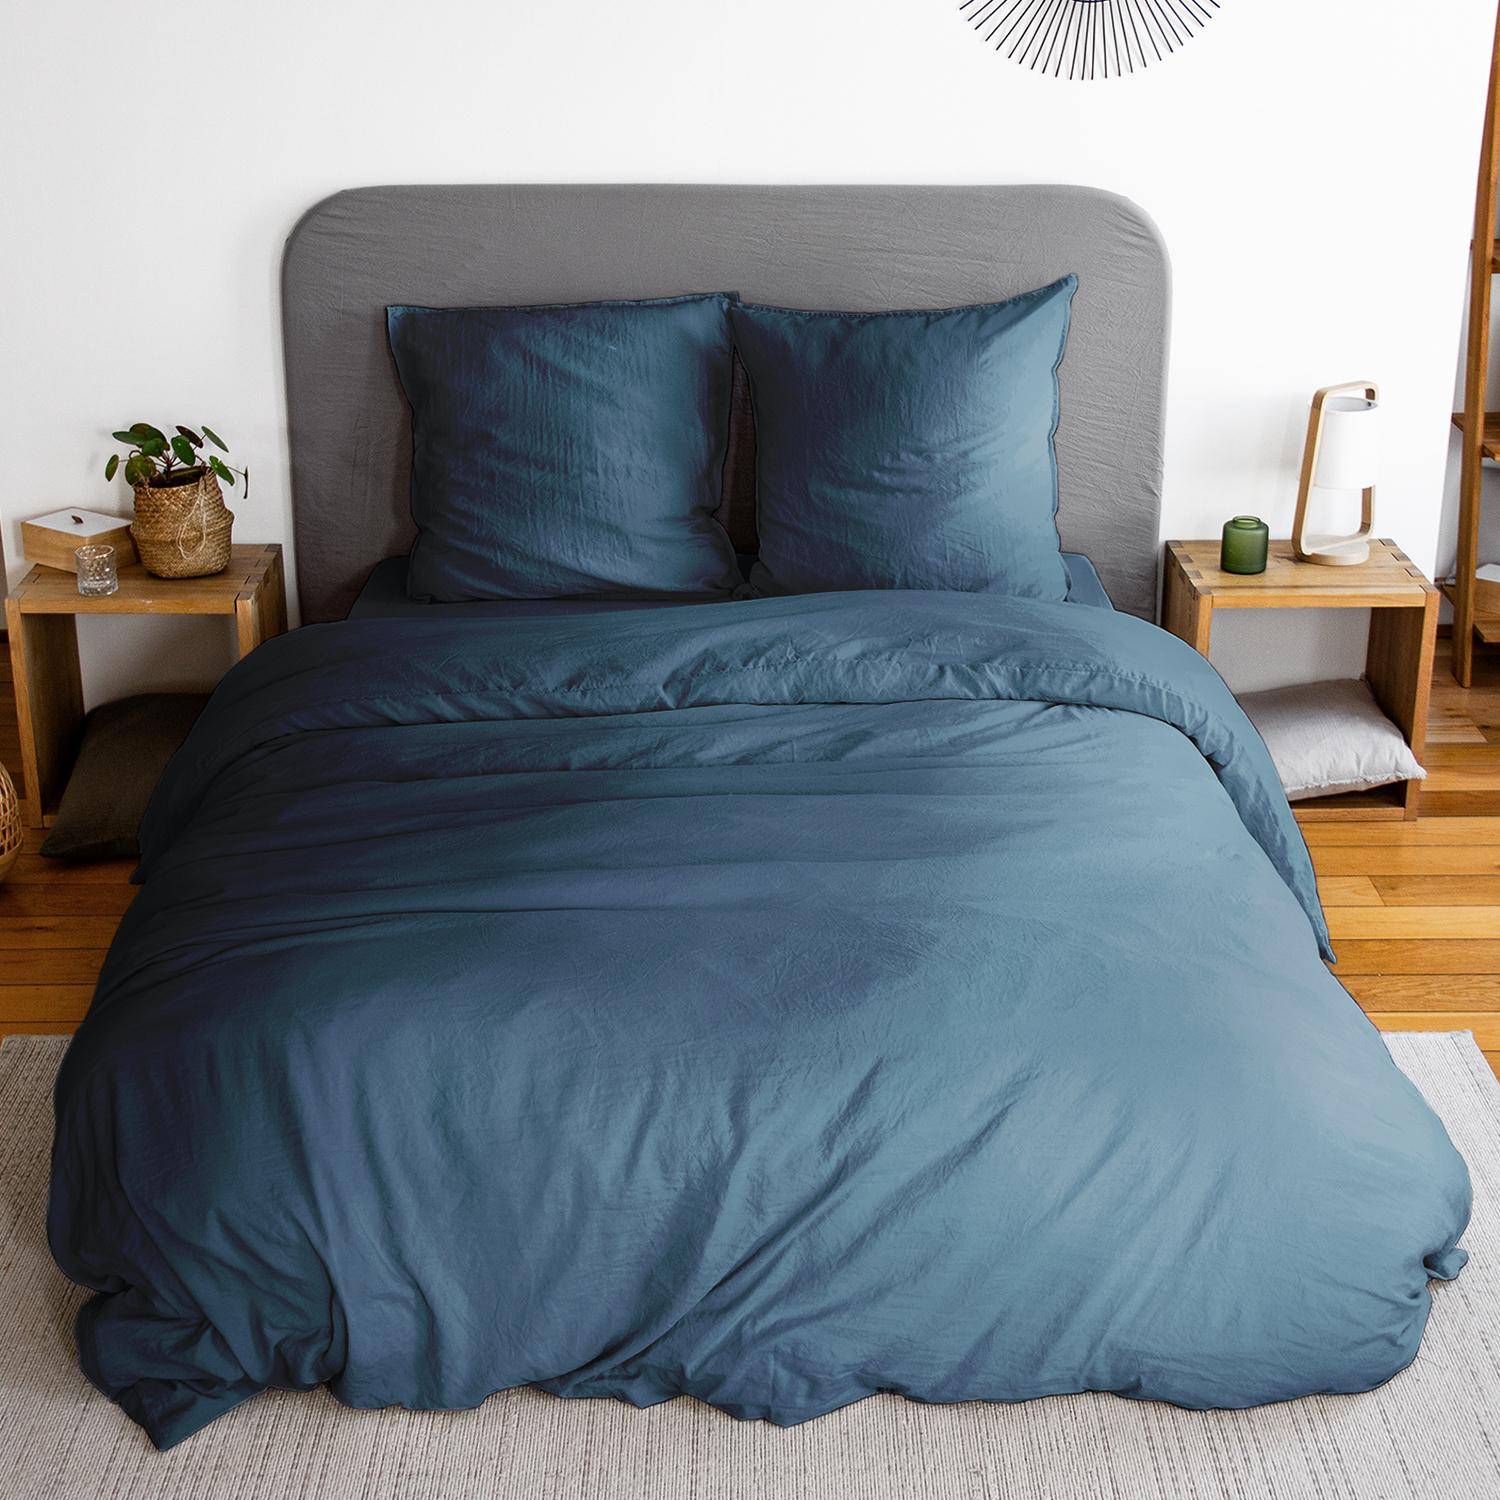 Bettwäsche-Set aus vorgewaschener Mikrofaser in nachtblau 240 x 220 cm für Doppelbetten, 1 Bettbezug und 2 Kissenbezüge,sweeek,Photo1